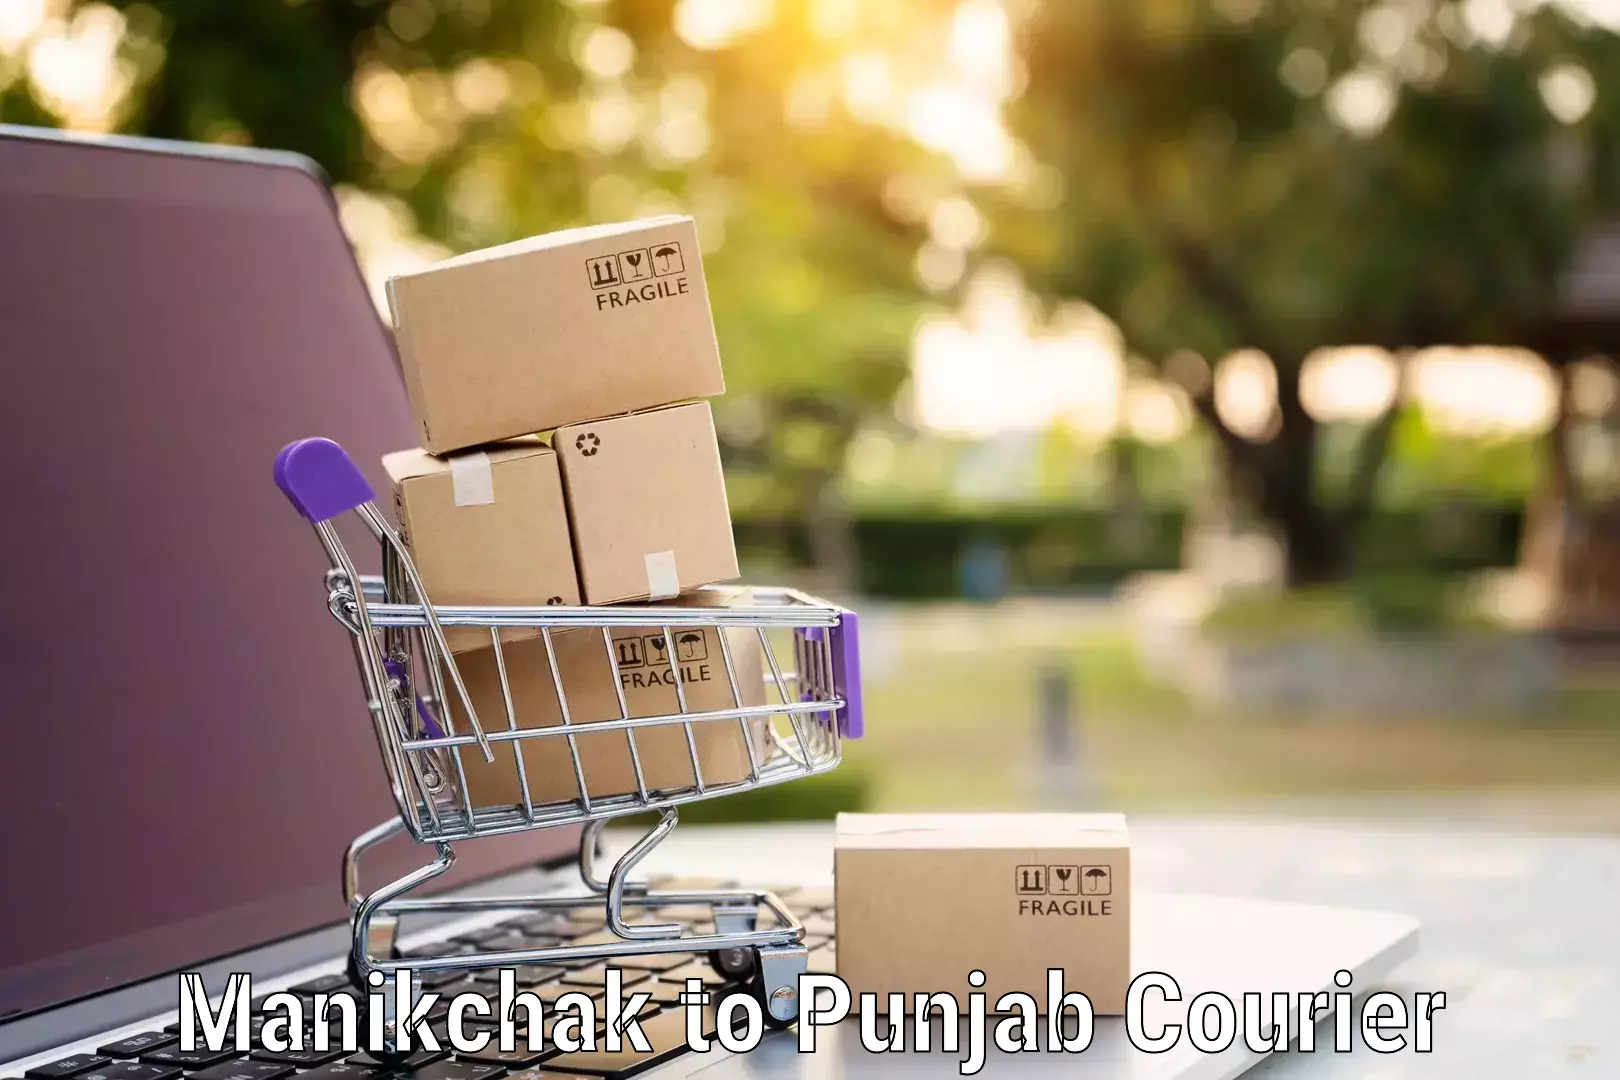 Professional furniture movers Manikchak to Punjab